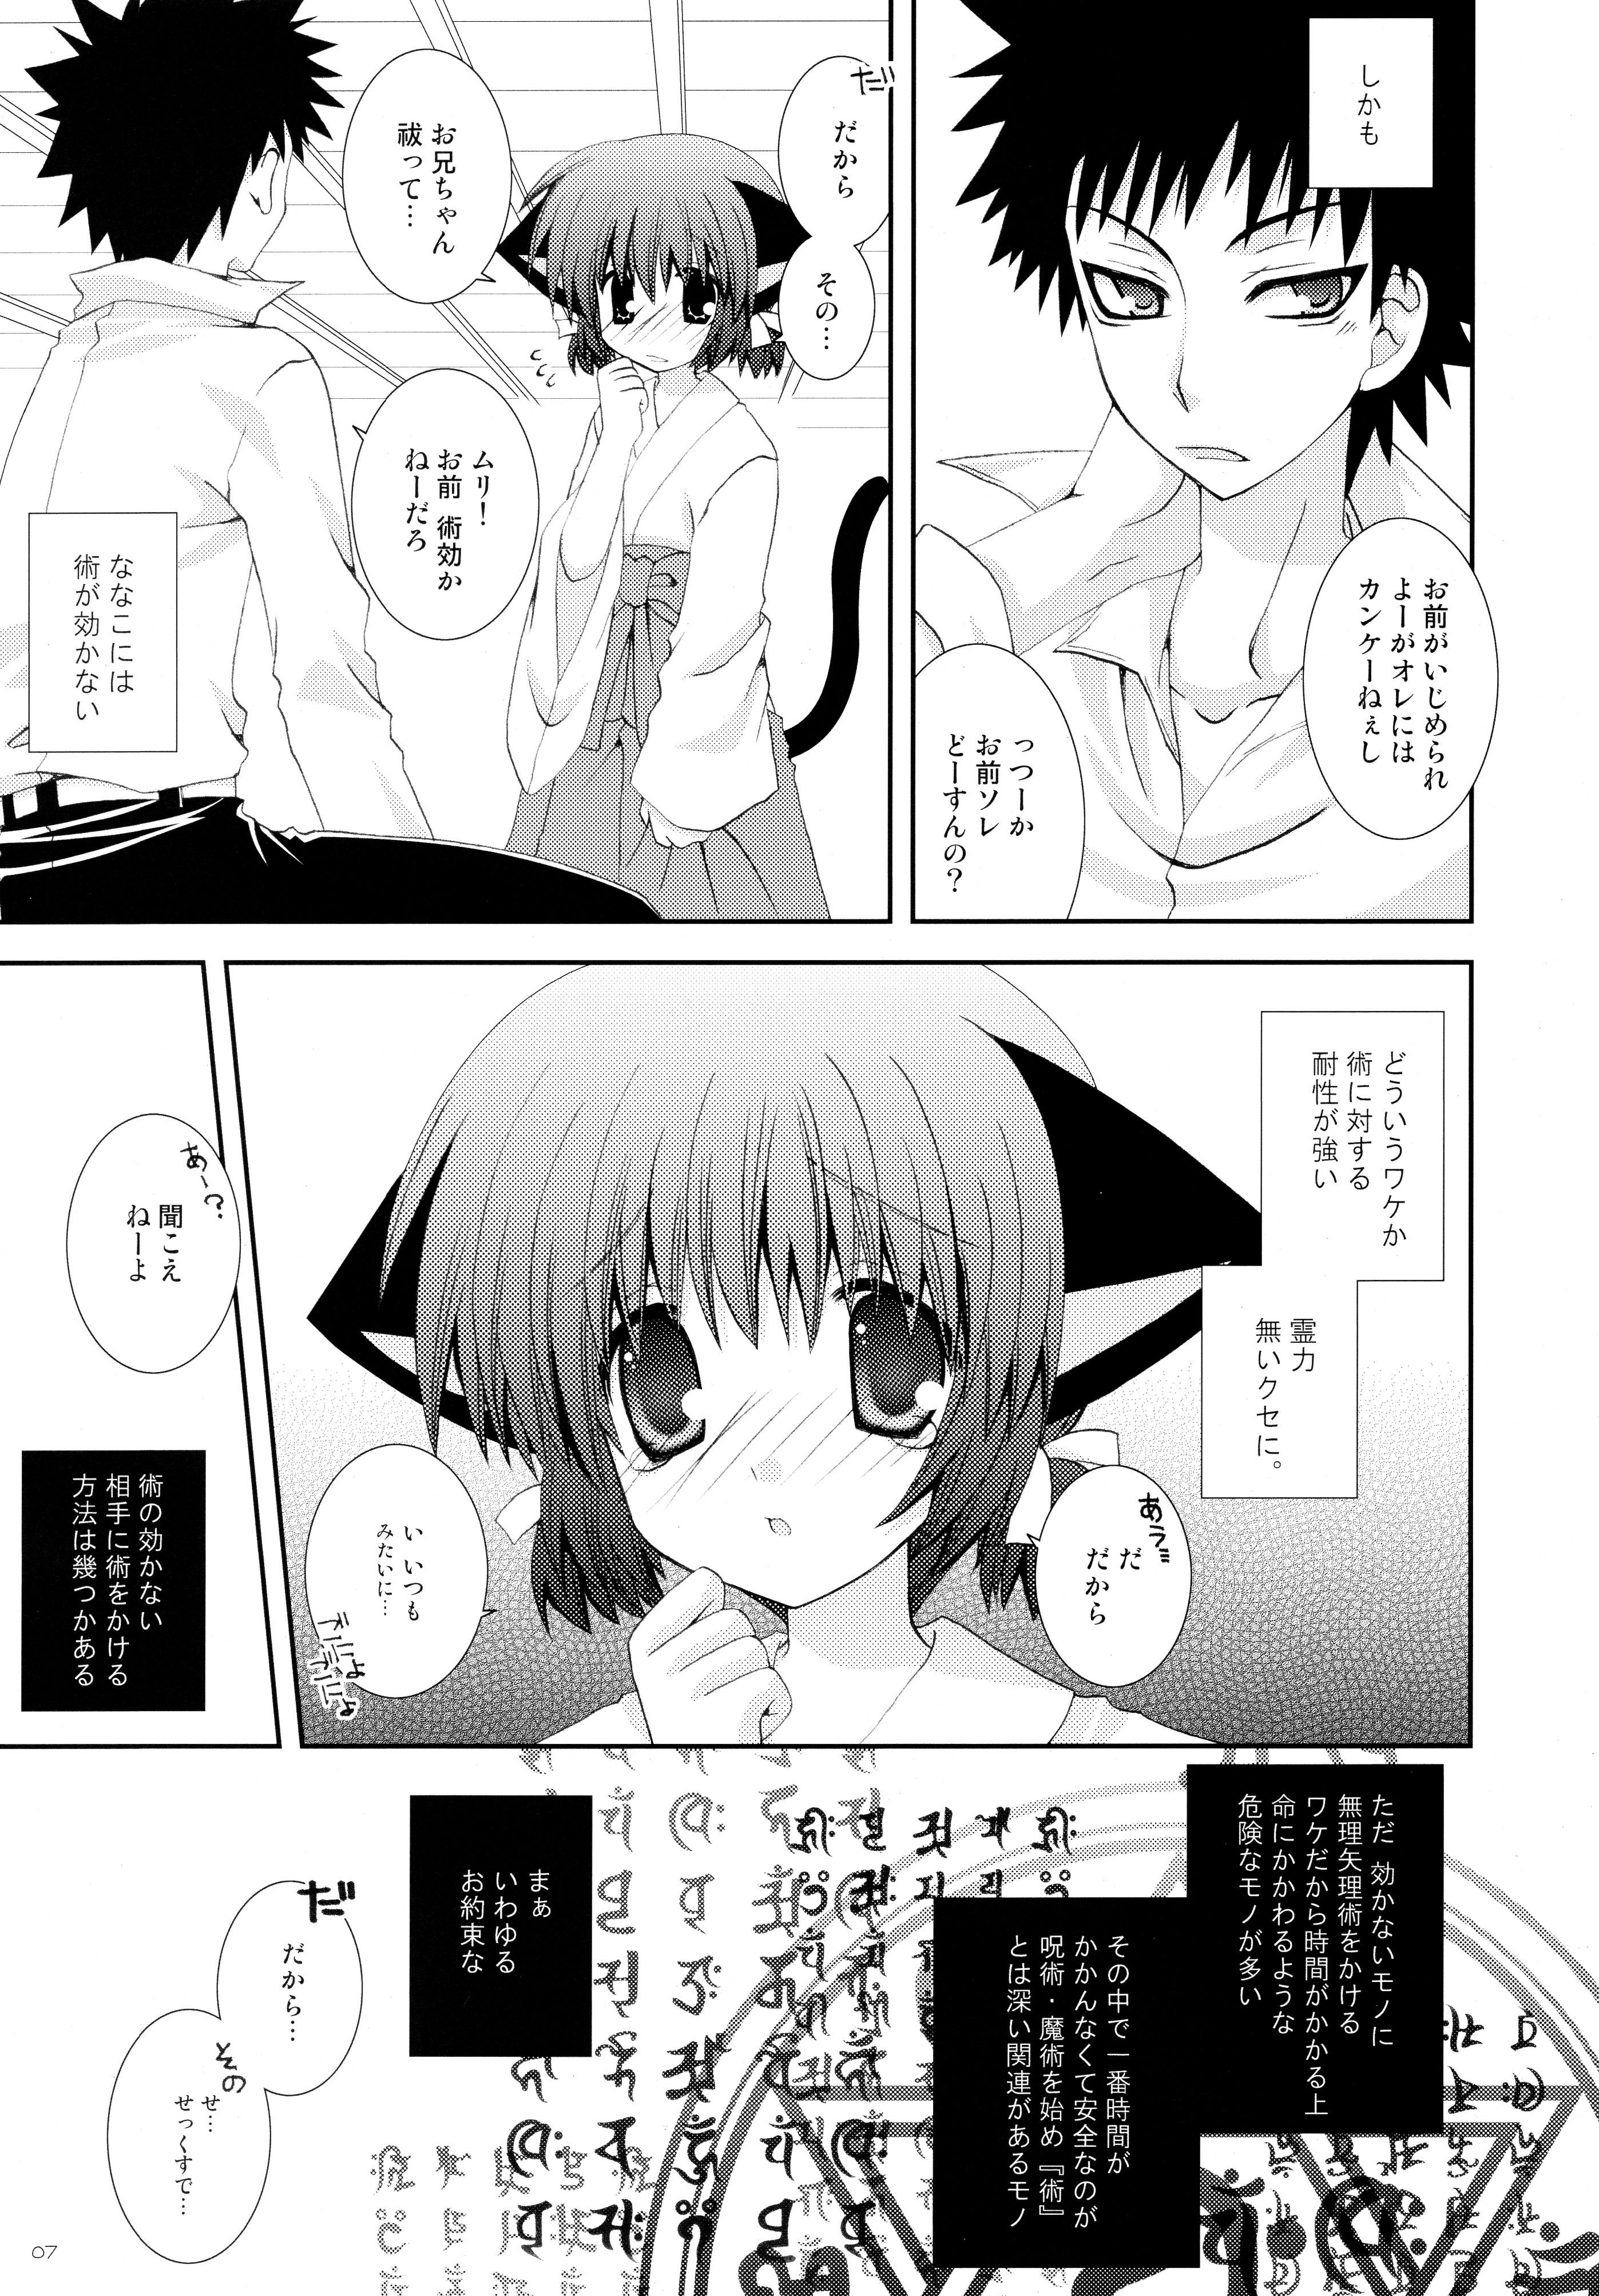 Penetration Imouto wa MikoMiko Nyanko Cumfacial - Page 7